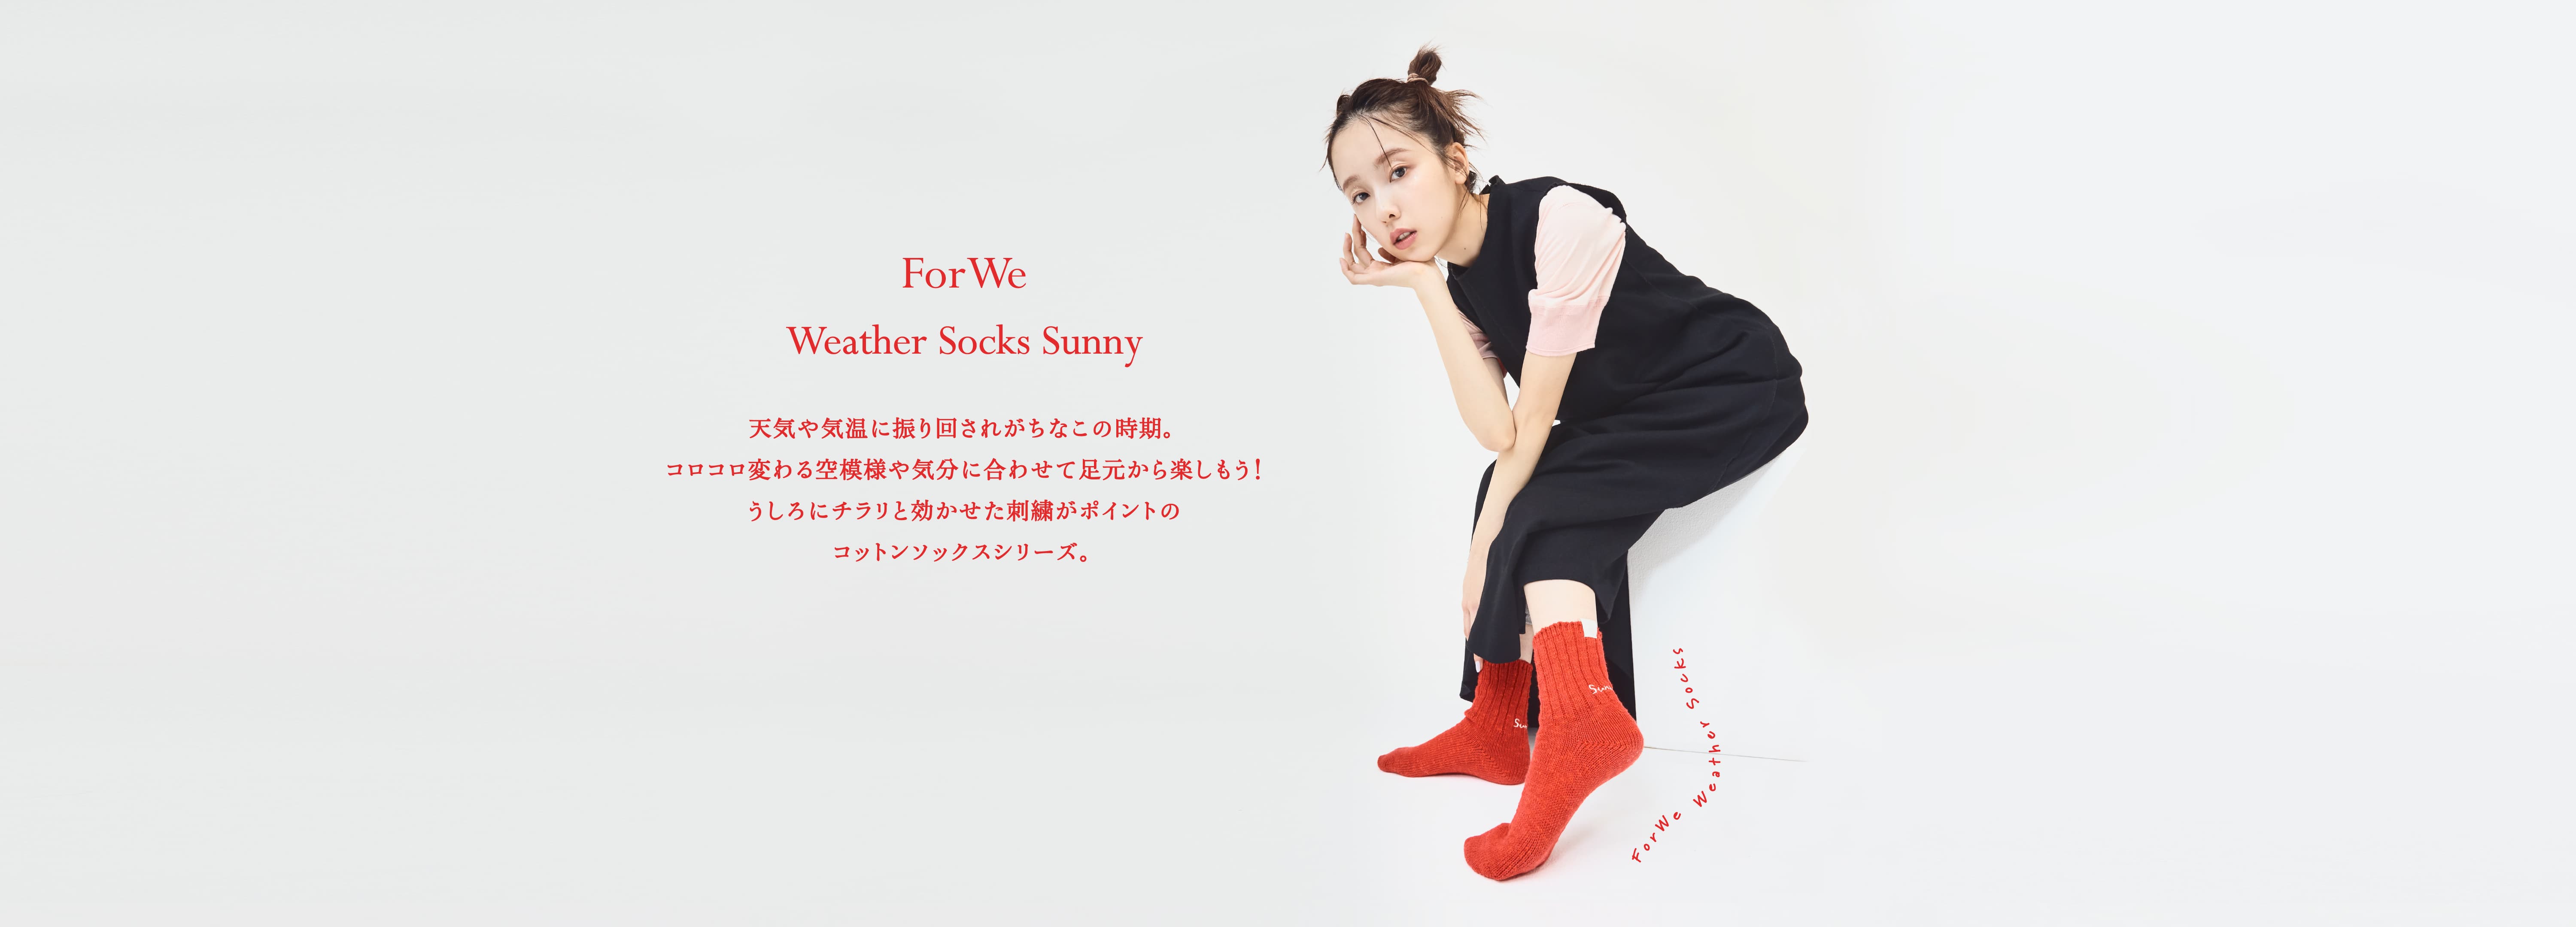 ForWe Weather Socks Sunny 天気や気温に振り回されがちなこの時期。コロコロ変わる空模様や気分に合わせて足元から楽しもう！うしろにチラリと効かせた刺繍がポイントのコットンソックスシリーズ。